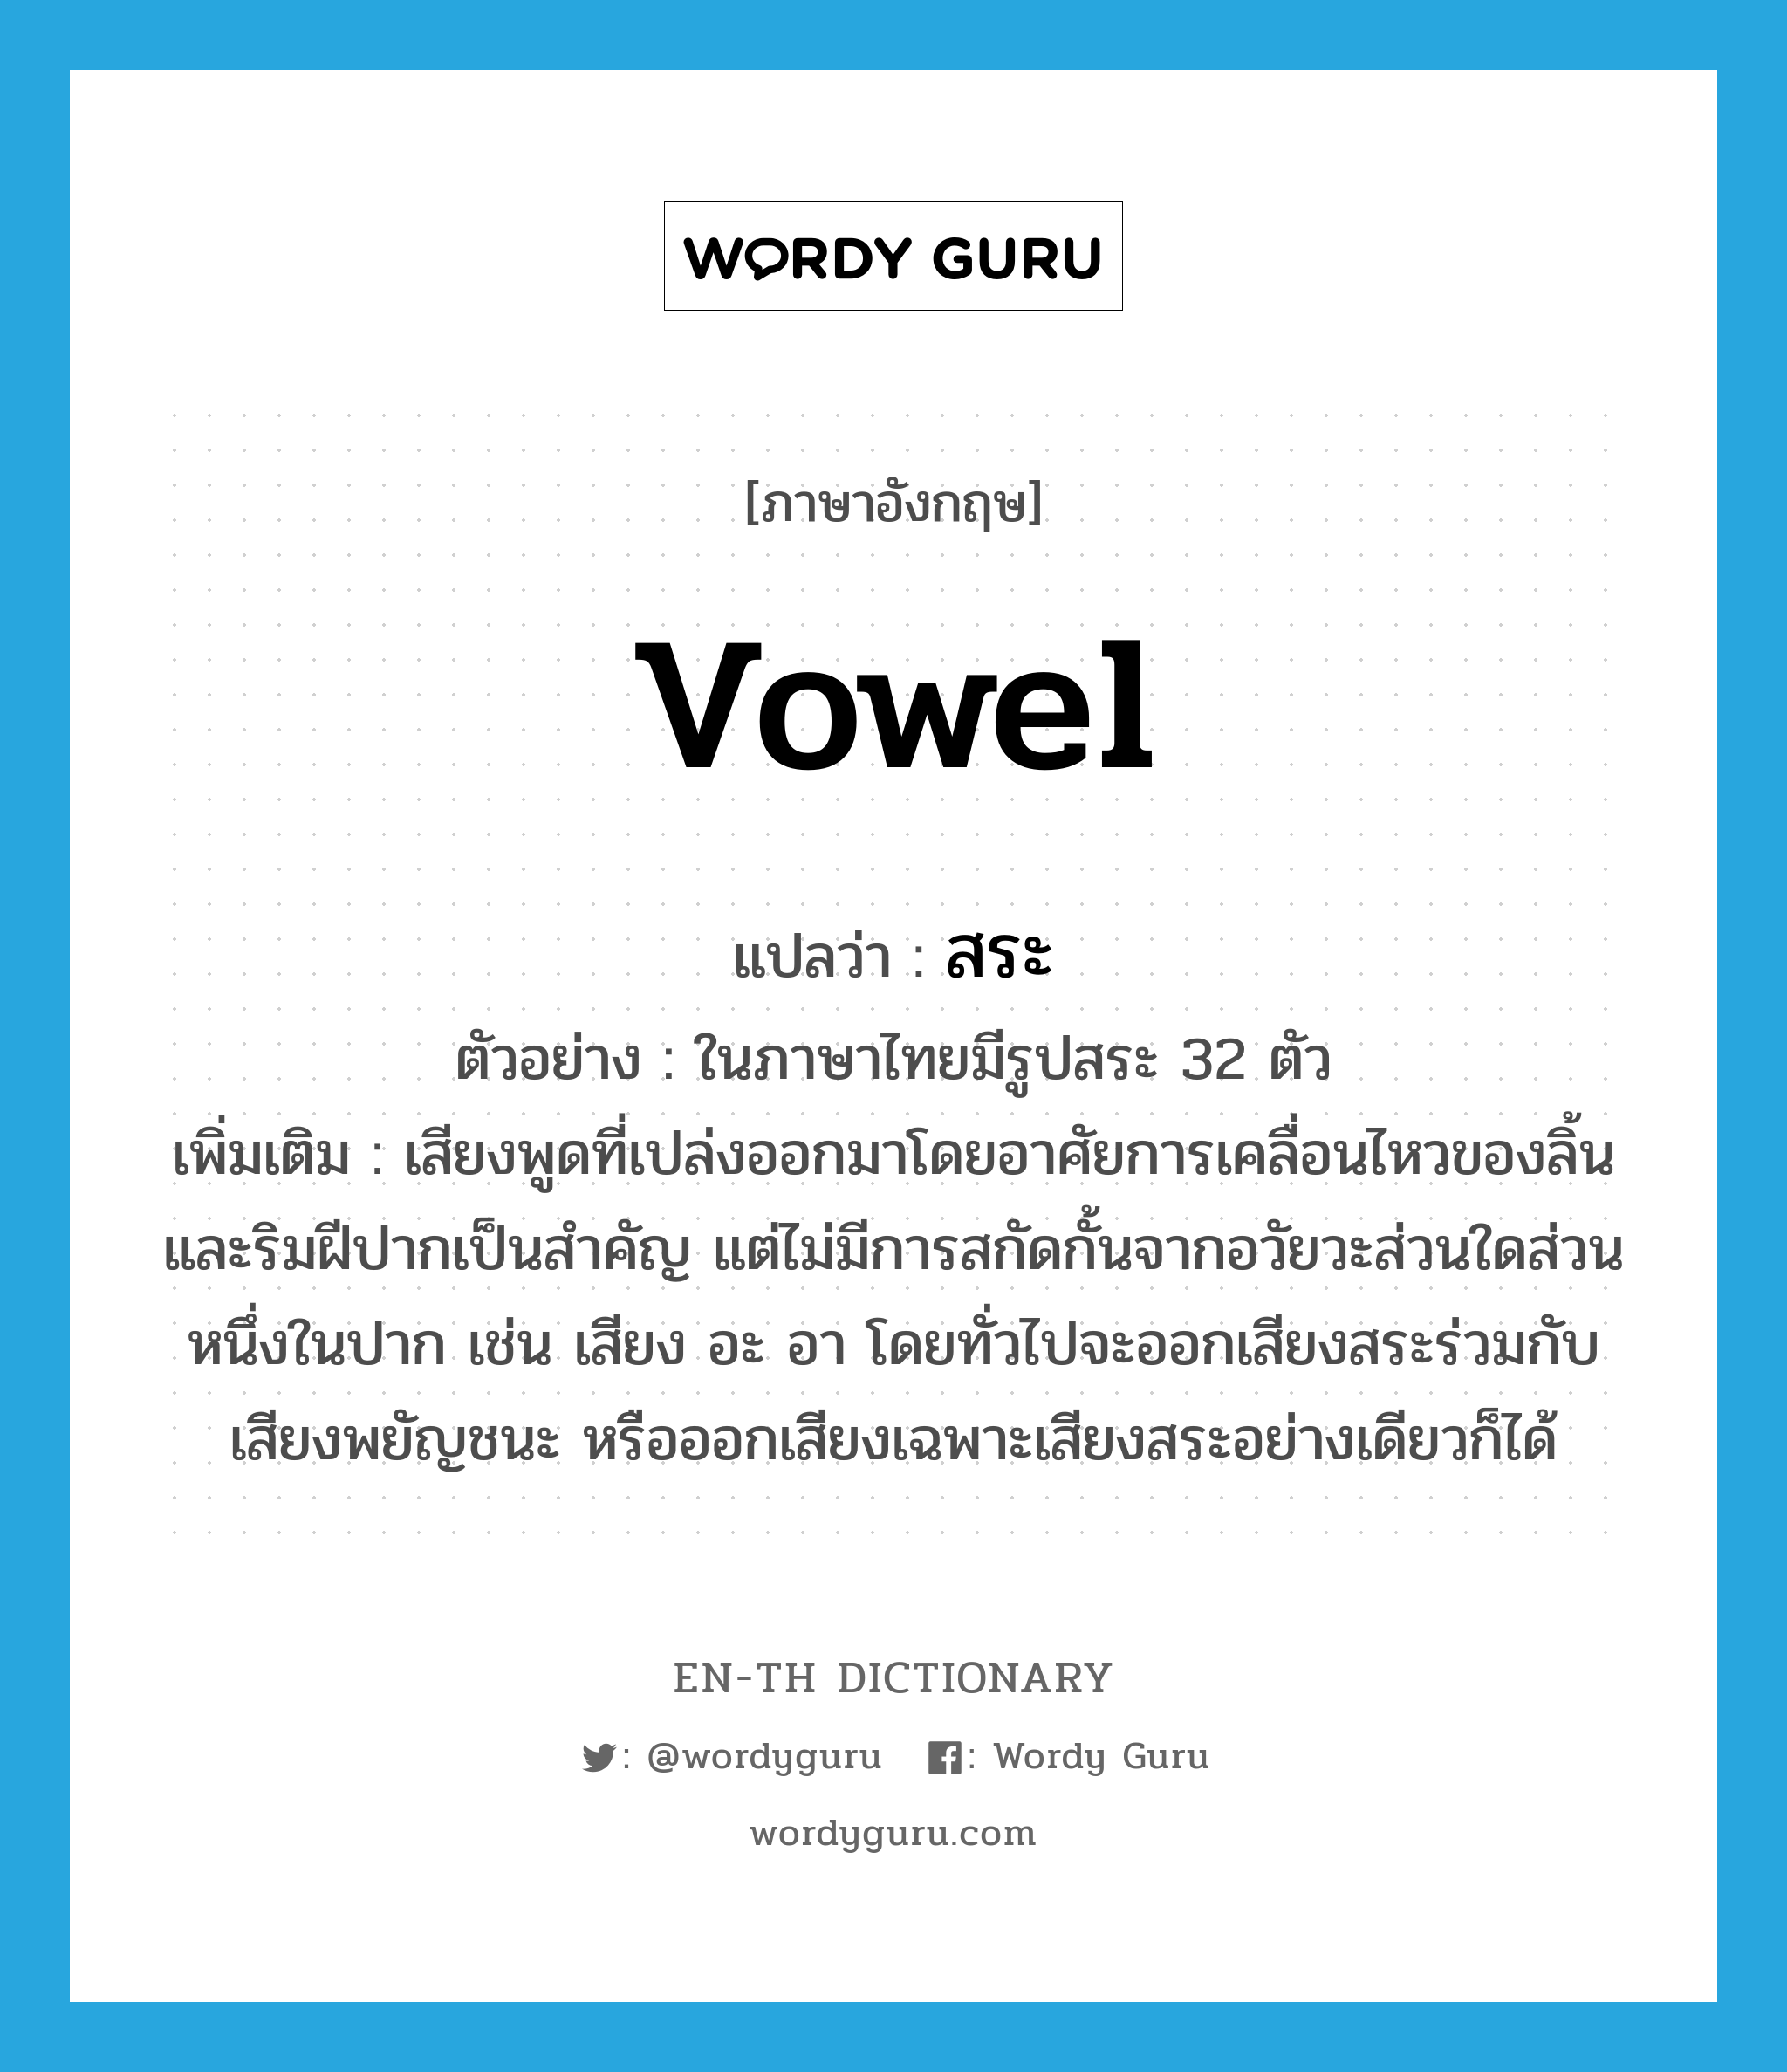 vowel แปลว่า?, คำศัพท์ภาษาอังกฤษ vowel แปลว่า สระ ประเภท N ตัวอย่าง ในภาษาไทยมีรูปสระ 32 ตัว เพิ่มเติม เสียงพูดที่เปล่งออกมาโดยอาศัยการเคลื่อนไหวของลิ้นและริมฝีปากเป็นสำคัญ แต่ไม่มีการสกัดกั้นจากอวัยวะส่วนใดส่วนหนึ่งในปาก เช่น เสียง อะ อา โดยทั่วไปจะออกเสียงสระร่วมกับเสียงพยัญชนะ หรือออกเสียงเฉพาะเสียงสระอย่างเดียวก็ได้ หมวด N